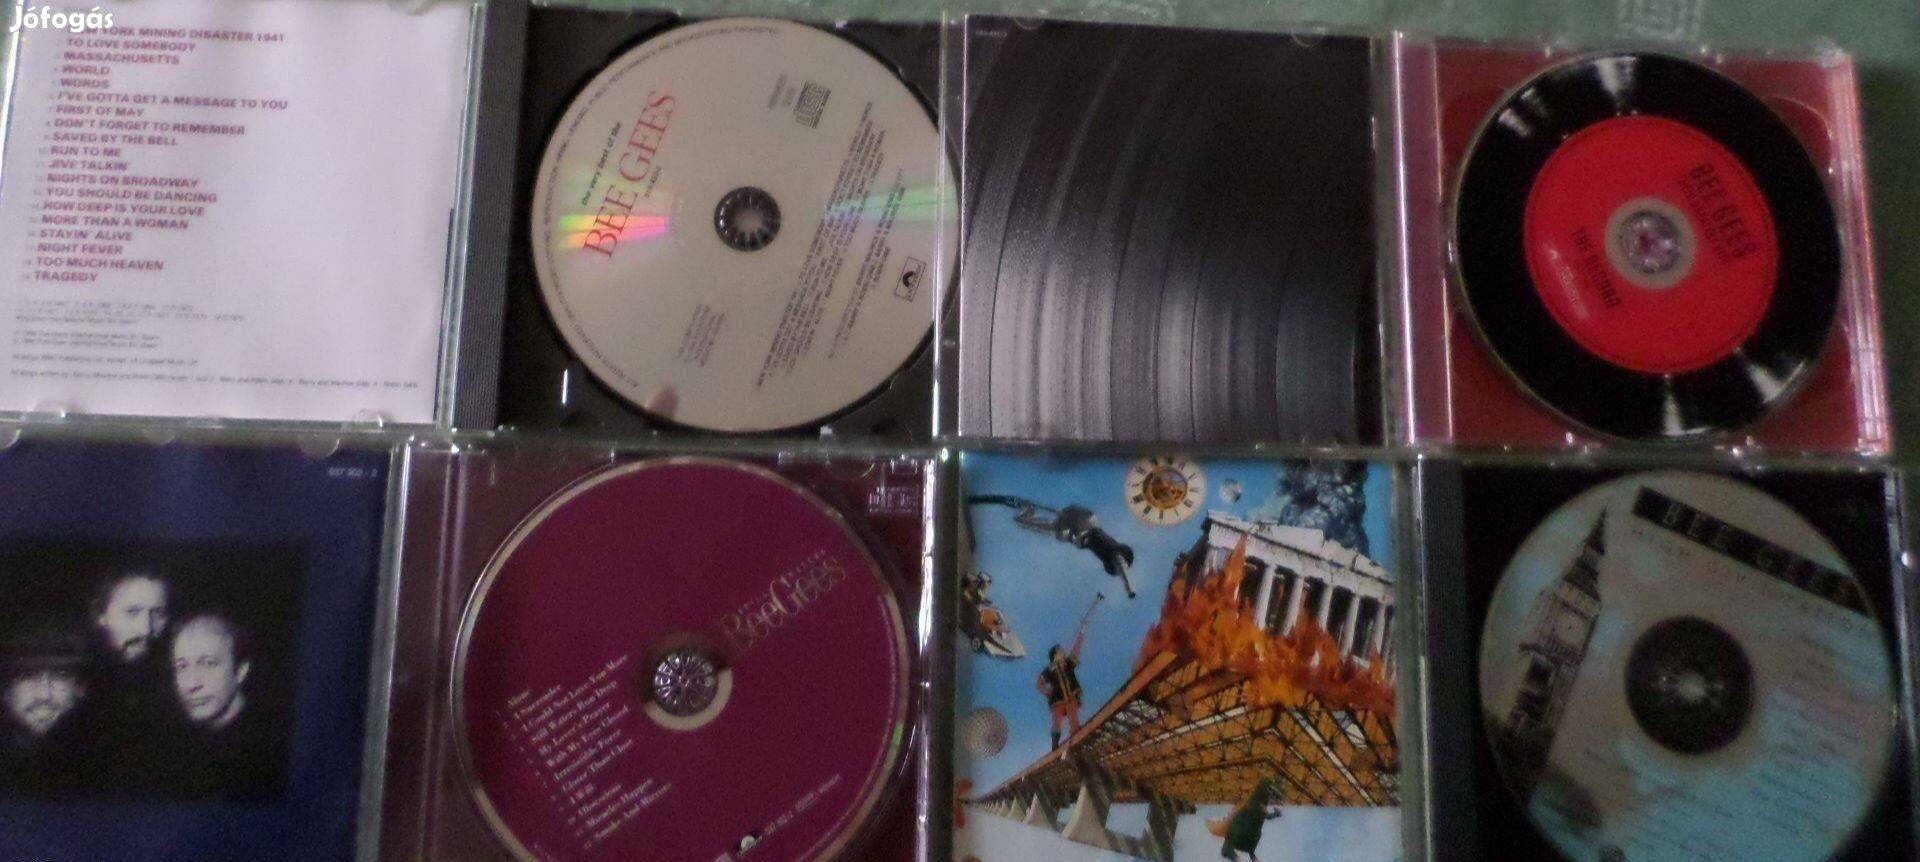 Rock CD 4 db Bee Gees